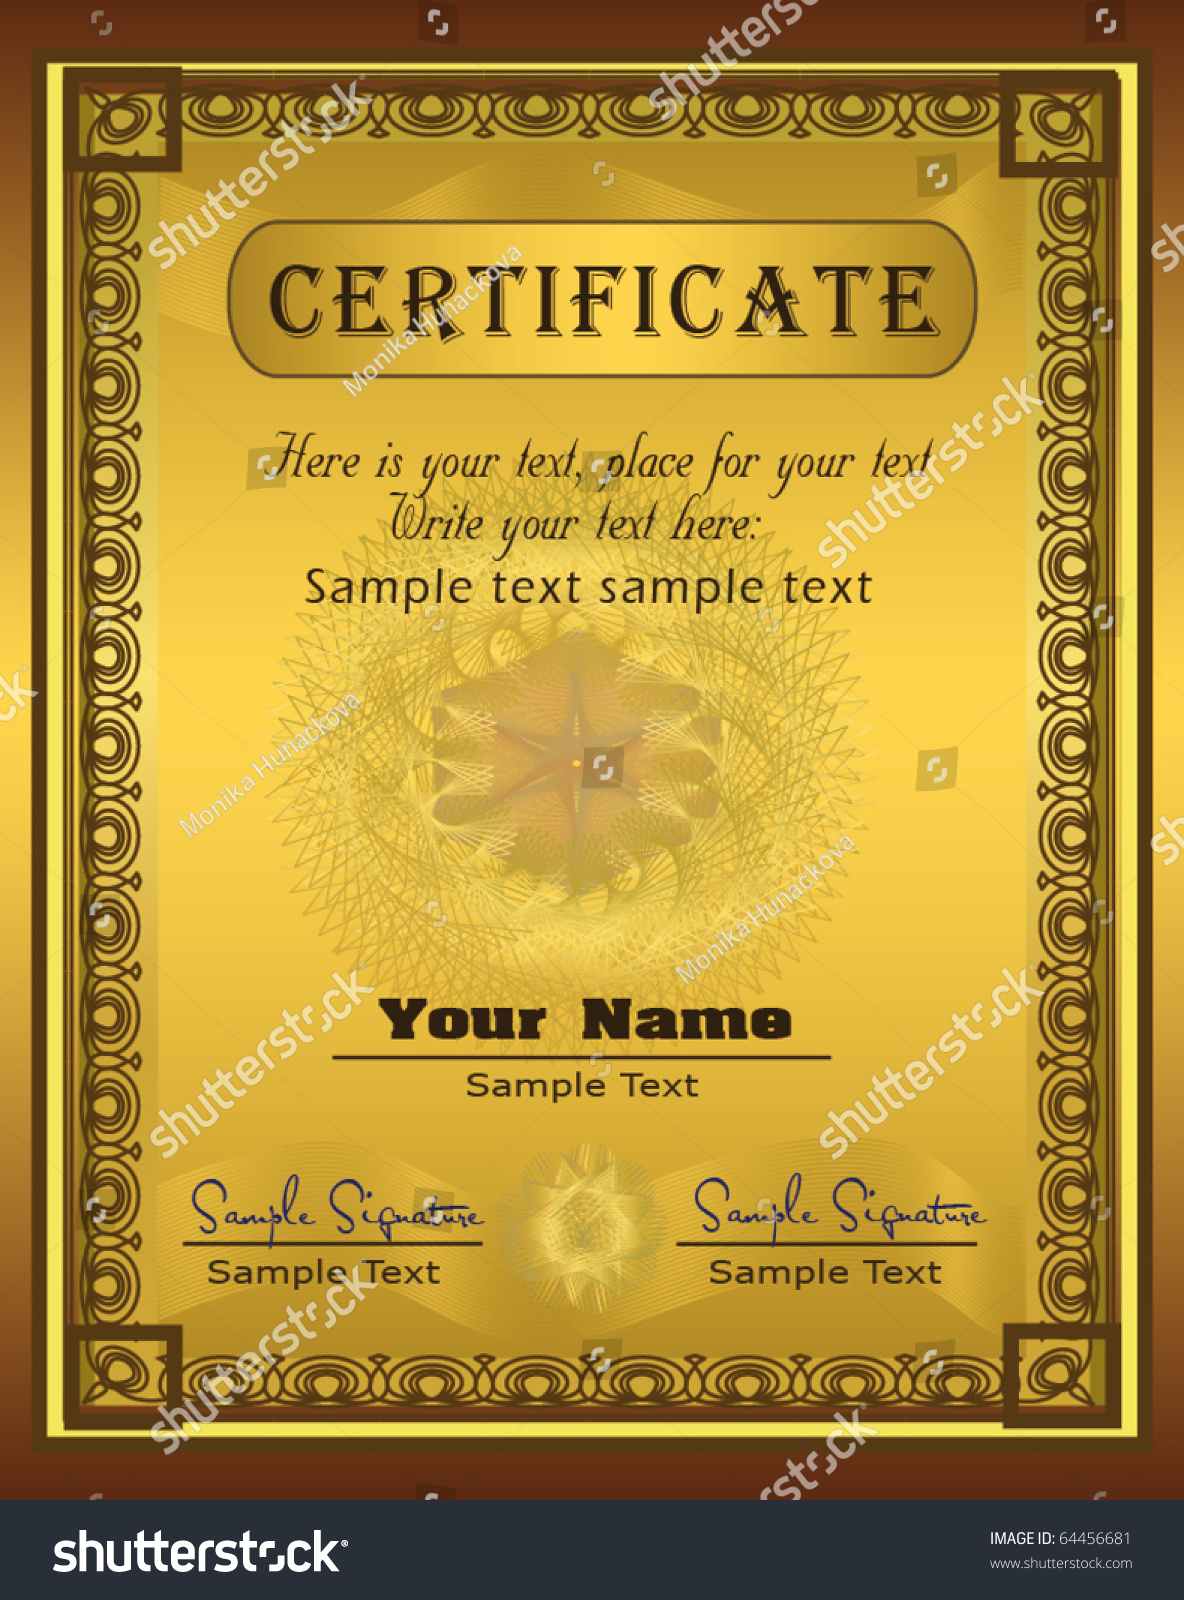 Великолепные диплом шаблон сертификата 03, векторный файл - 365psd.com.